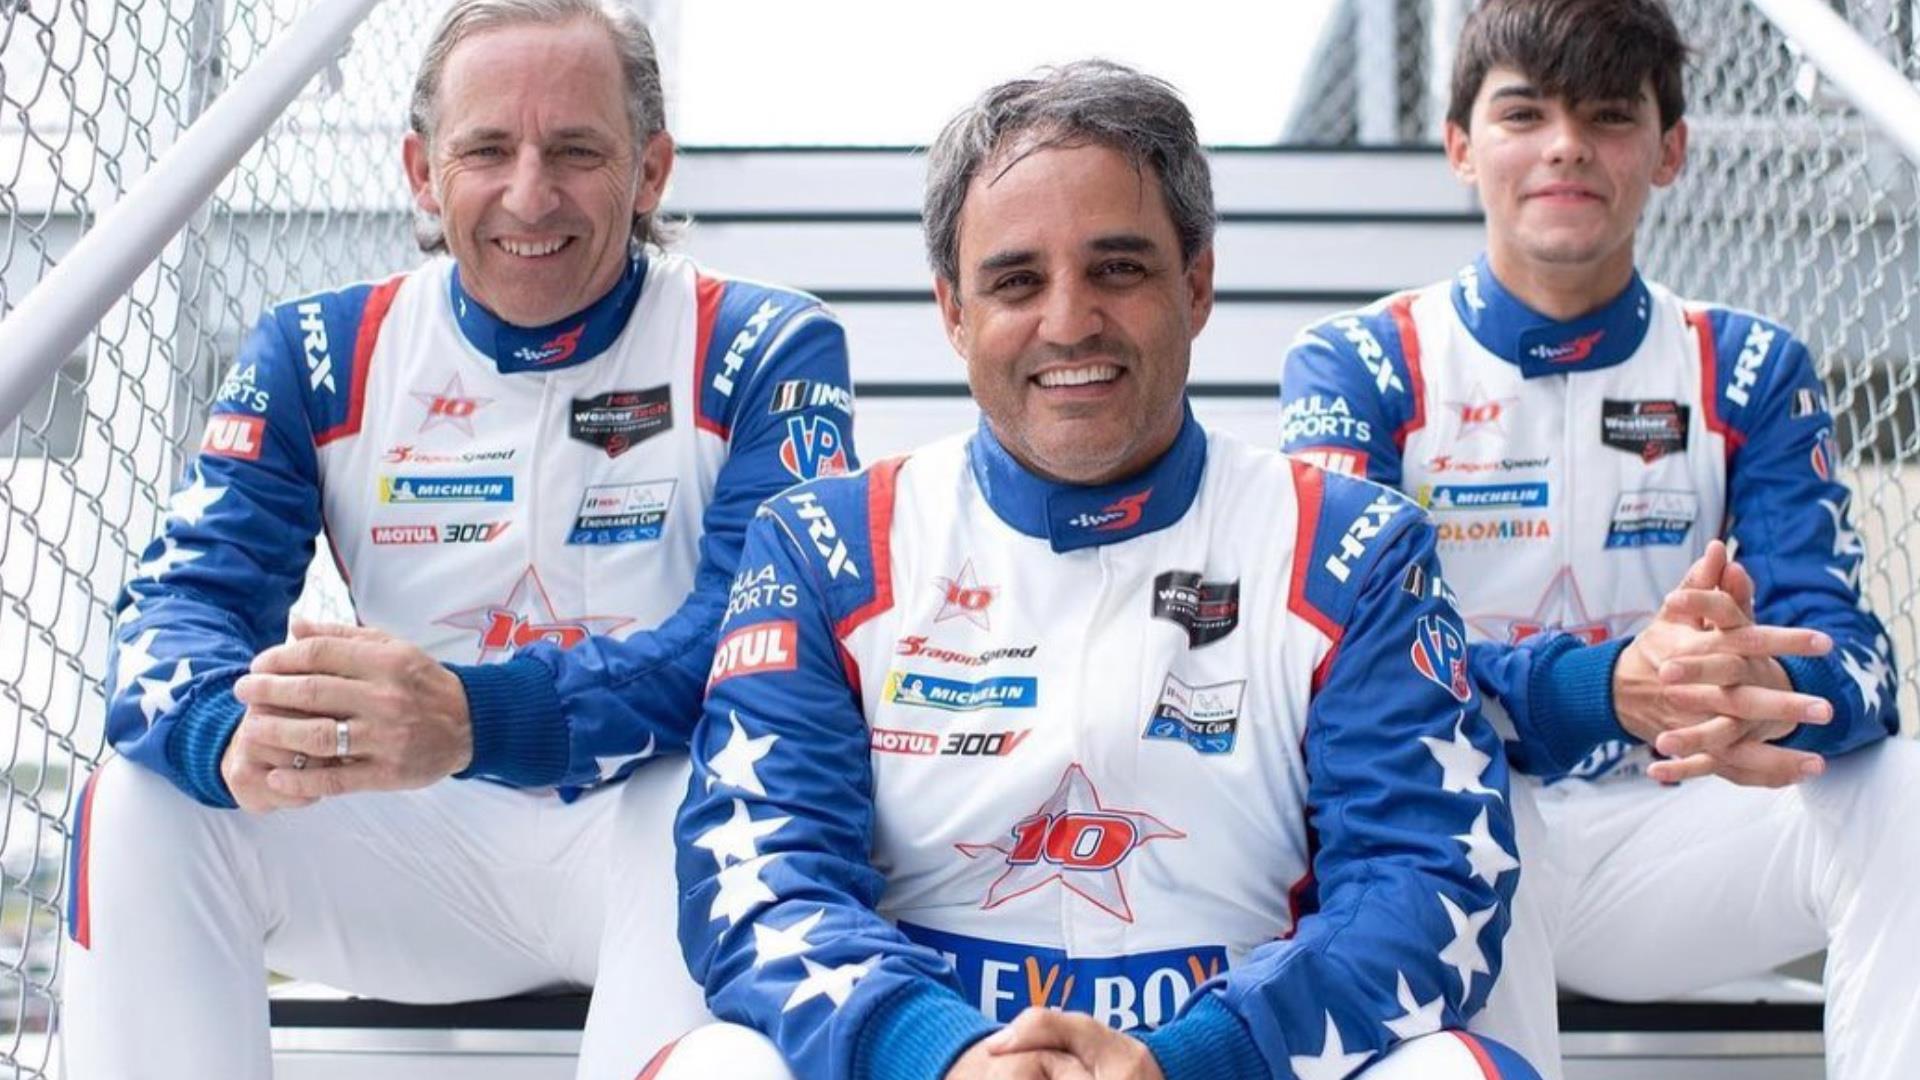 Montoya es considerado uno de los pilotos más completos de la historia de la F1. Foto: Instagram Juan Pablo Montoya